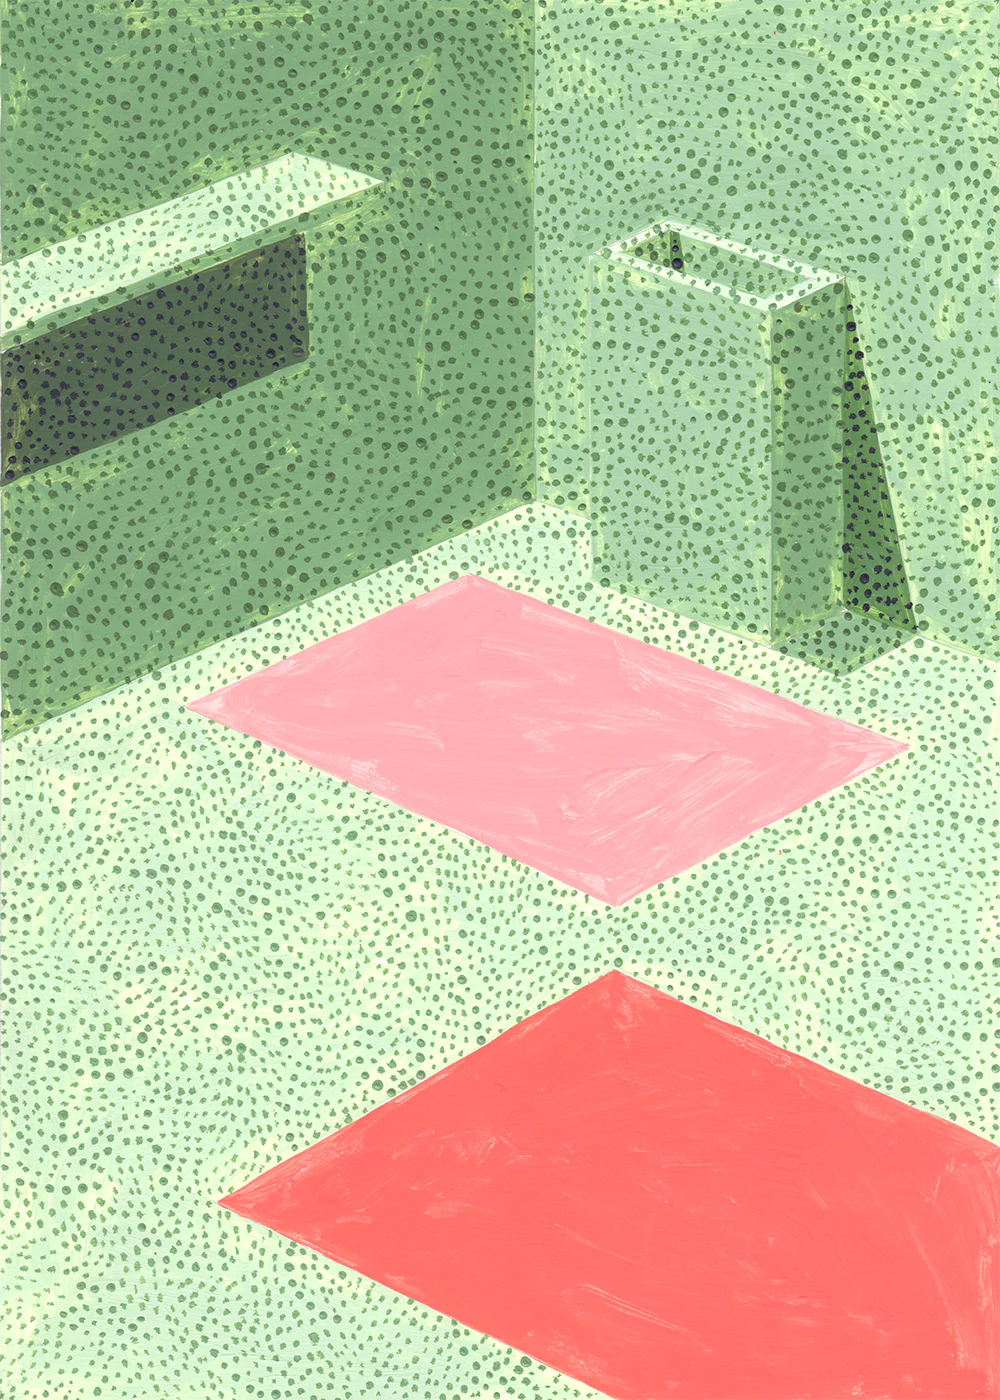 Bathroom Stories 01  in Grün / Pink präsentiert im Onlineshop von KAQTU Design AG. Bild ist von Paper Collective